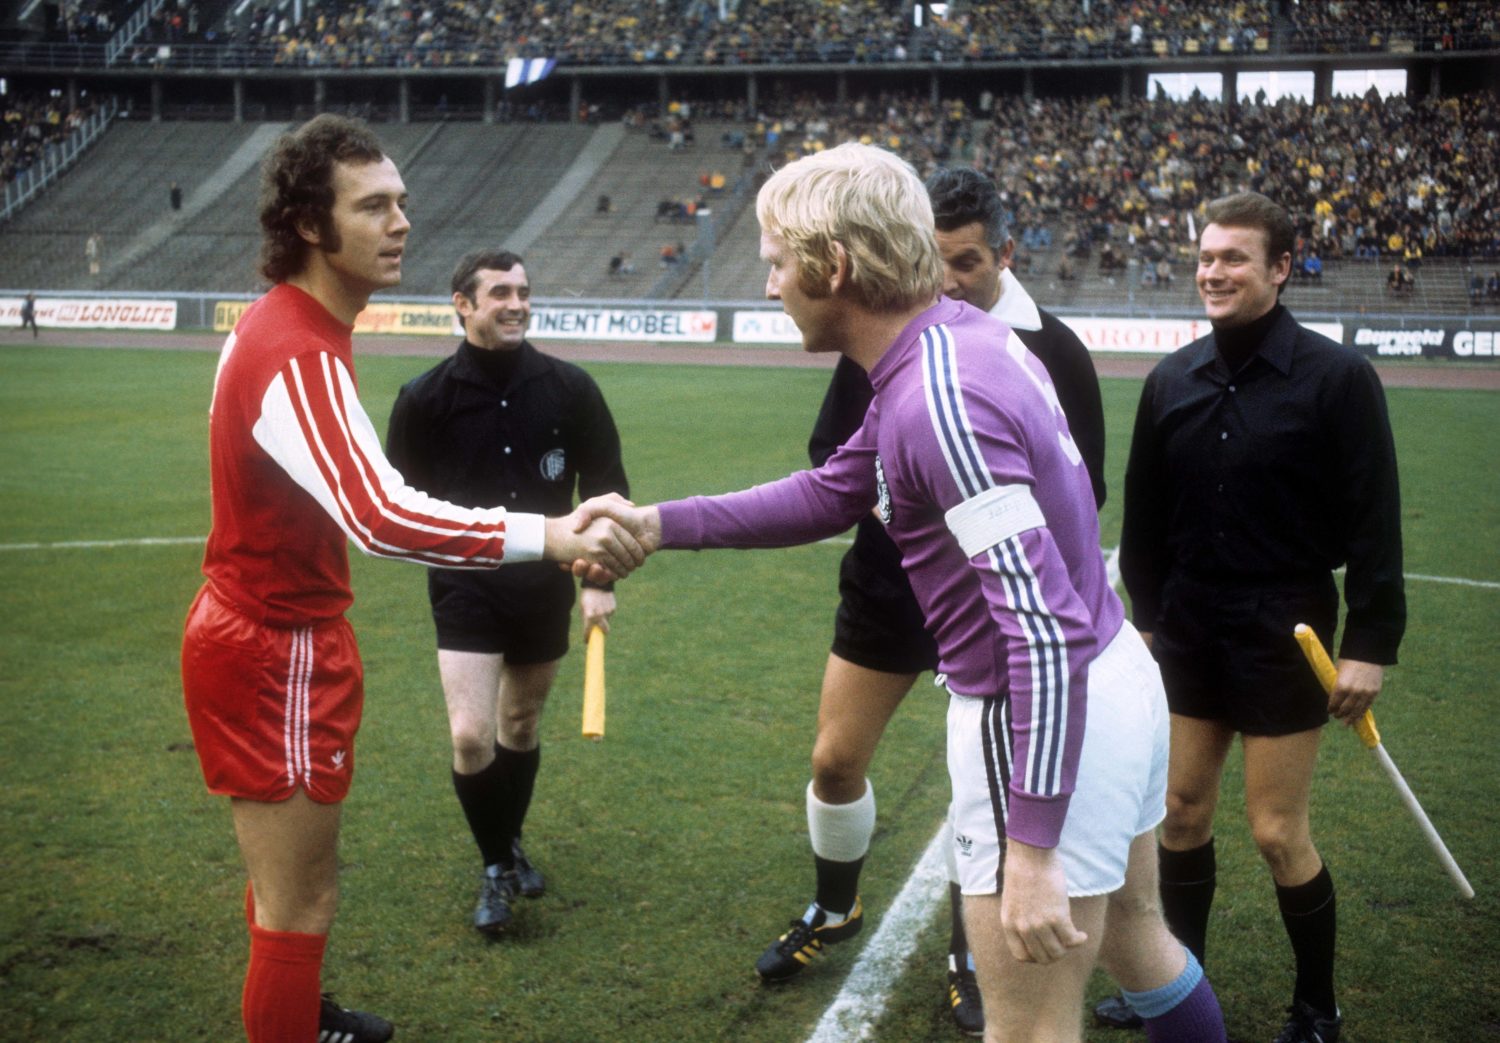 Franz Beckenbauer (FC Bayern München) und Karl Heinz Schnellinger (Tennis Borussia Berlin), 1975. Foto: Imago/WEREK